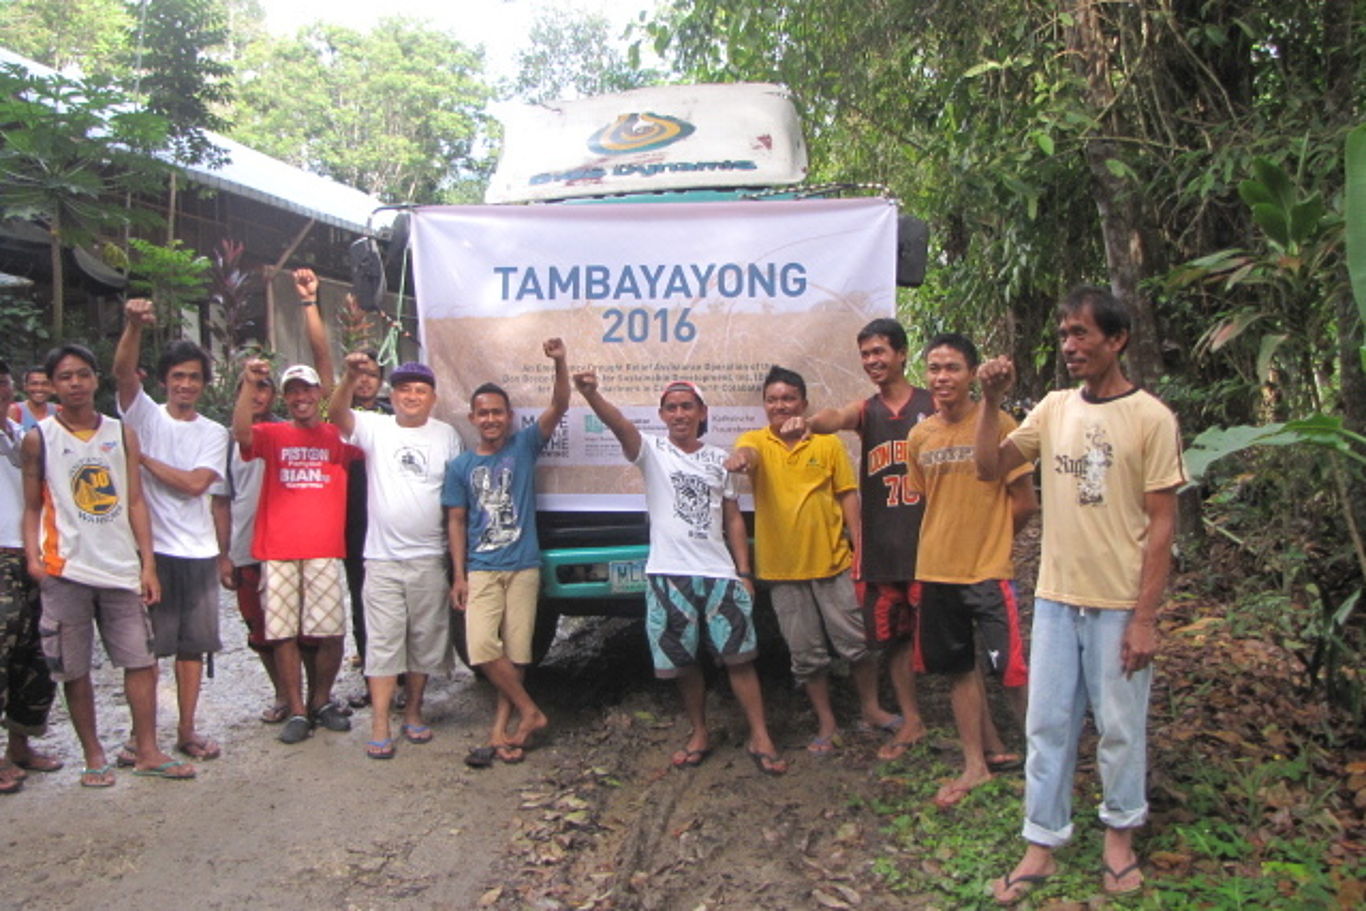 Eine Gruppe Männer und Jugendlicher steht vor einem Transparent mit der Aufschrift "Tambayayong" (übersetzt: Zusammenarbeit)